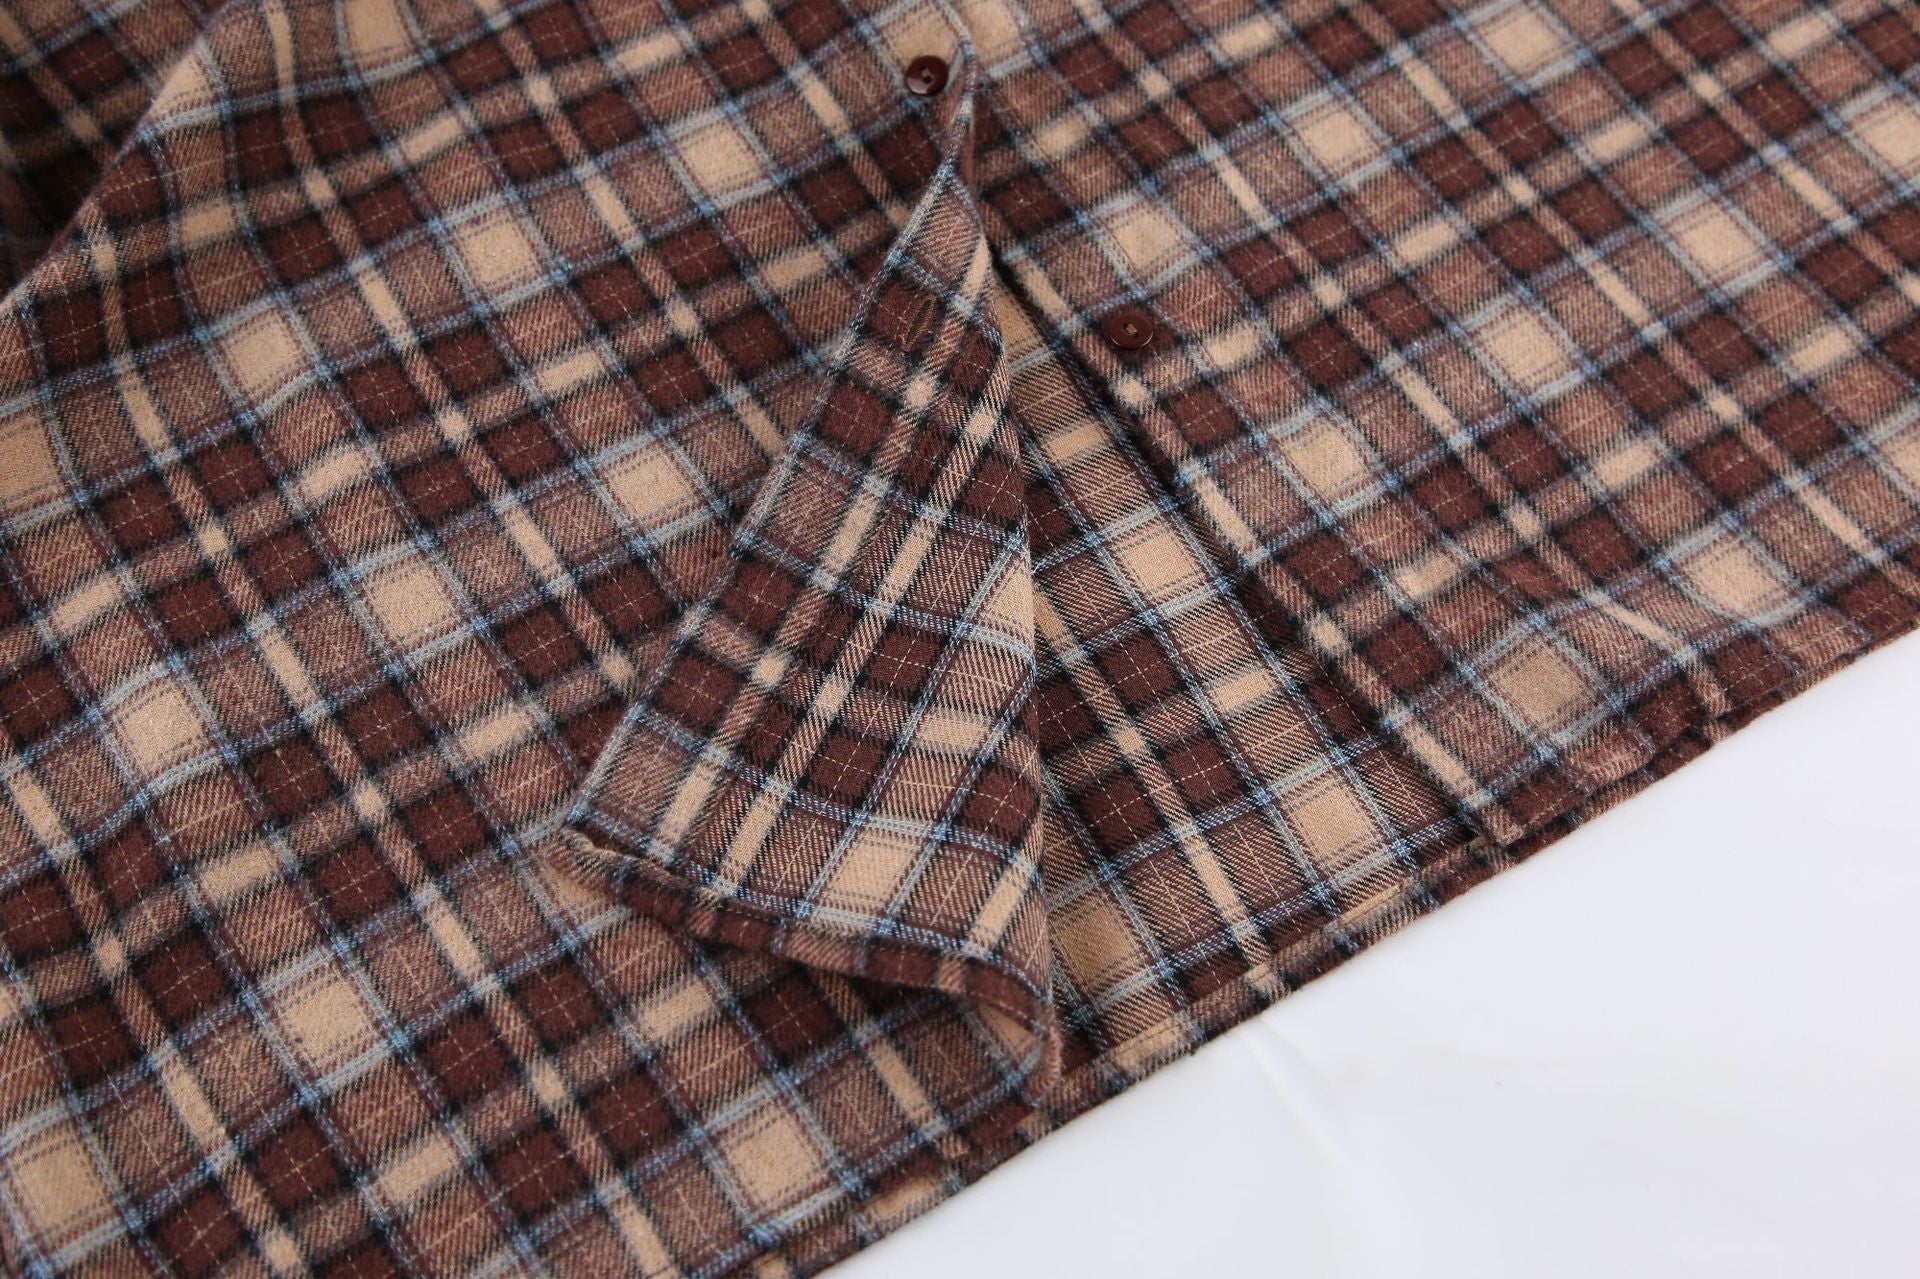 Designed Vintage Long Sleeves Plaid Shirts-Shirts & Tops-Khaki-S-Free Shipping Leatheretro